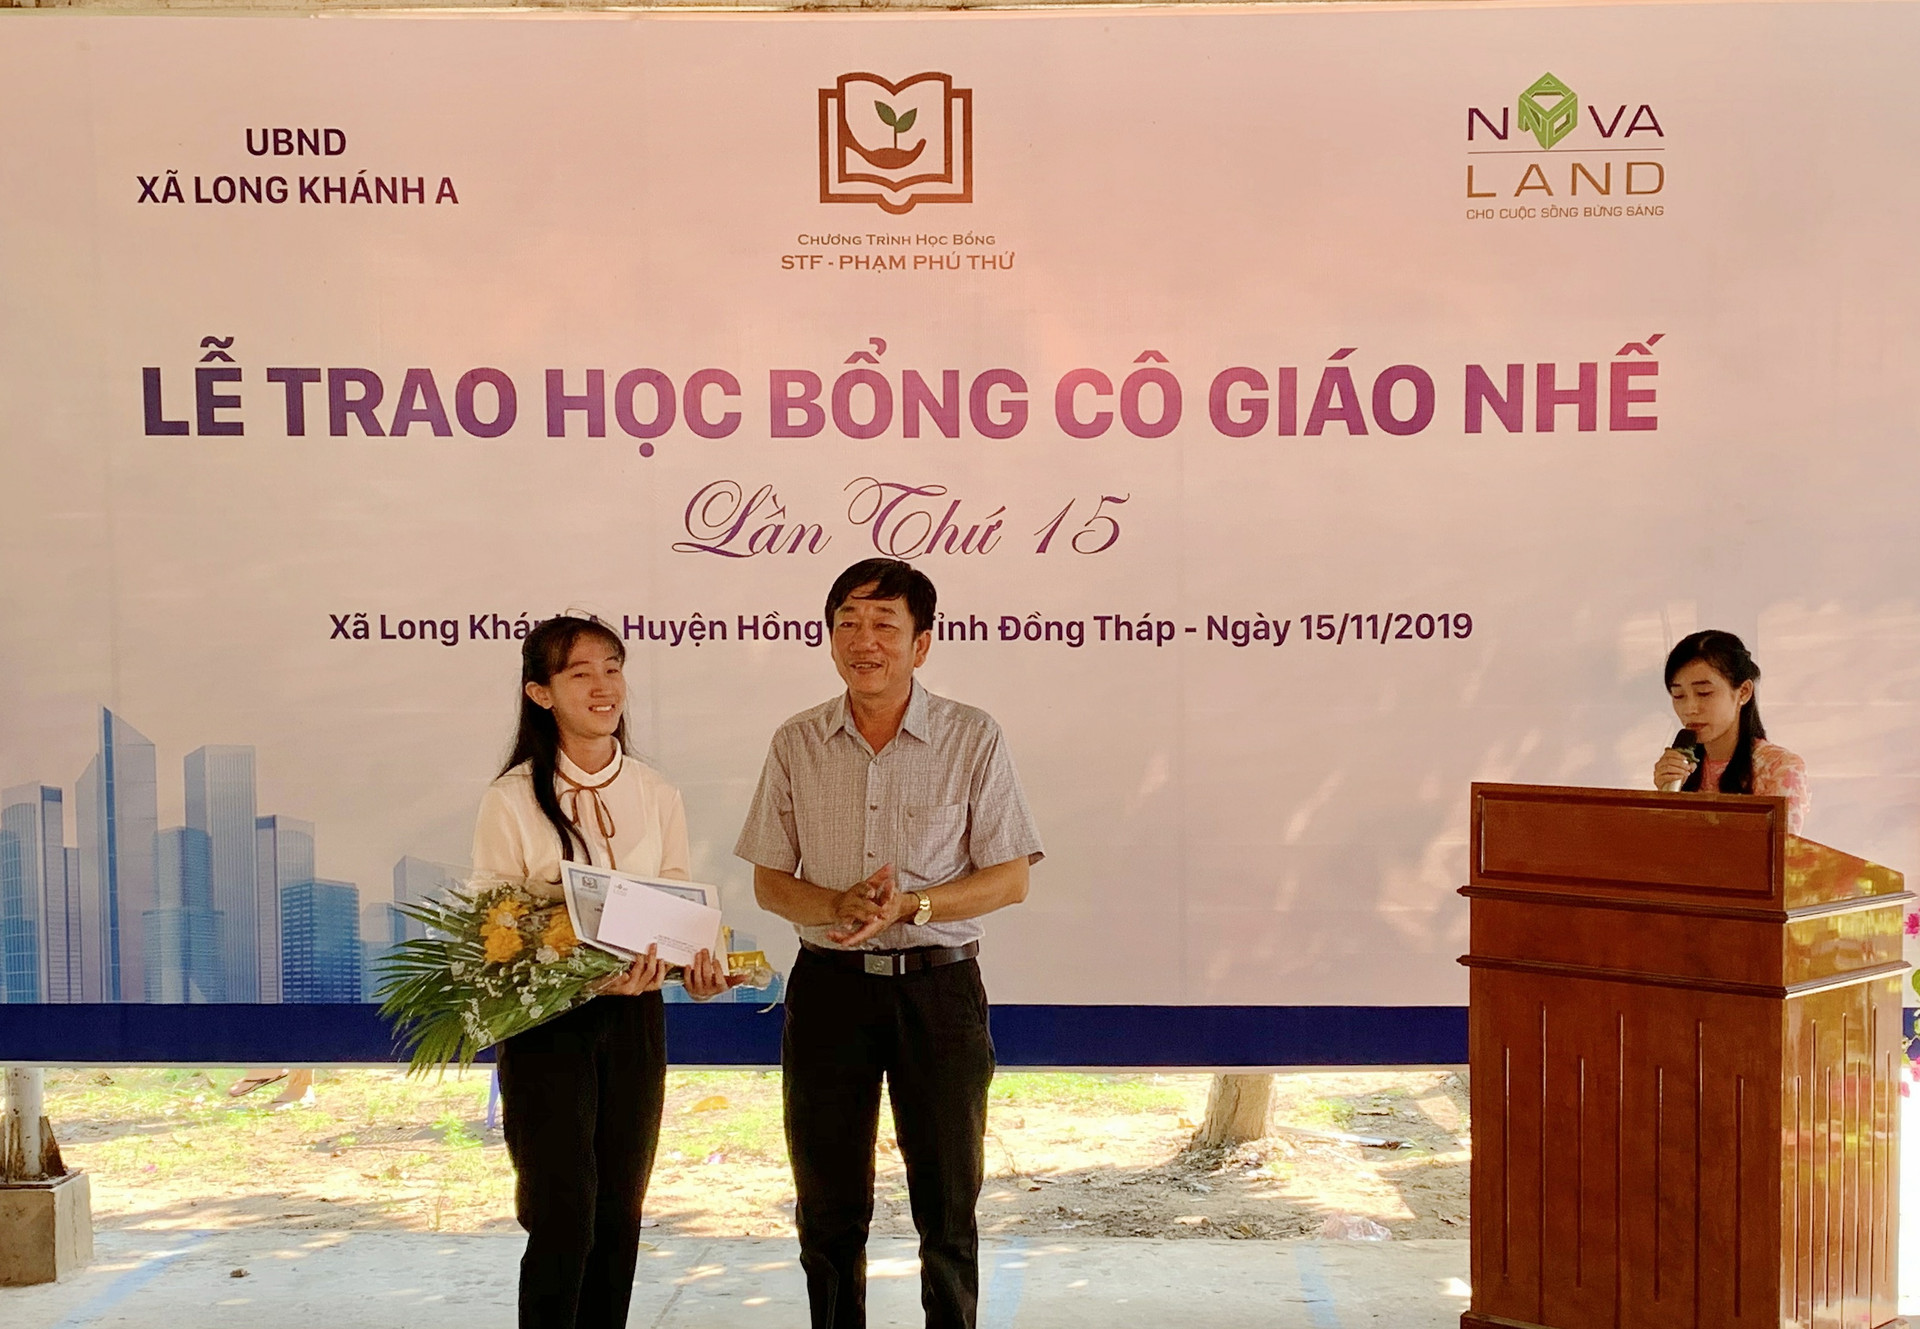 Bạn Huỳnh Thị Thùy Trang quay về trường chia sẻ lại hành trình thực hiện ước mơ của mình nhờ sự đồng hành của chương trình “Học bổng cô giáo Nhế”.